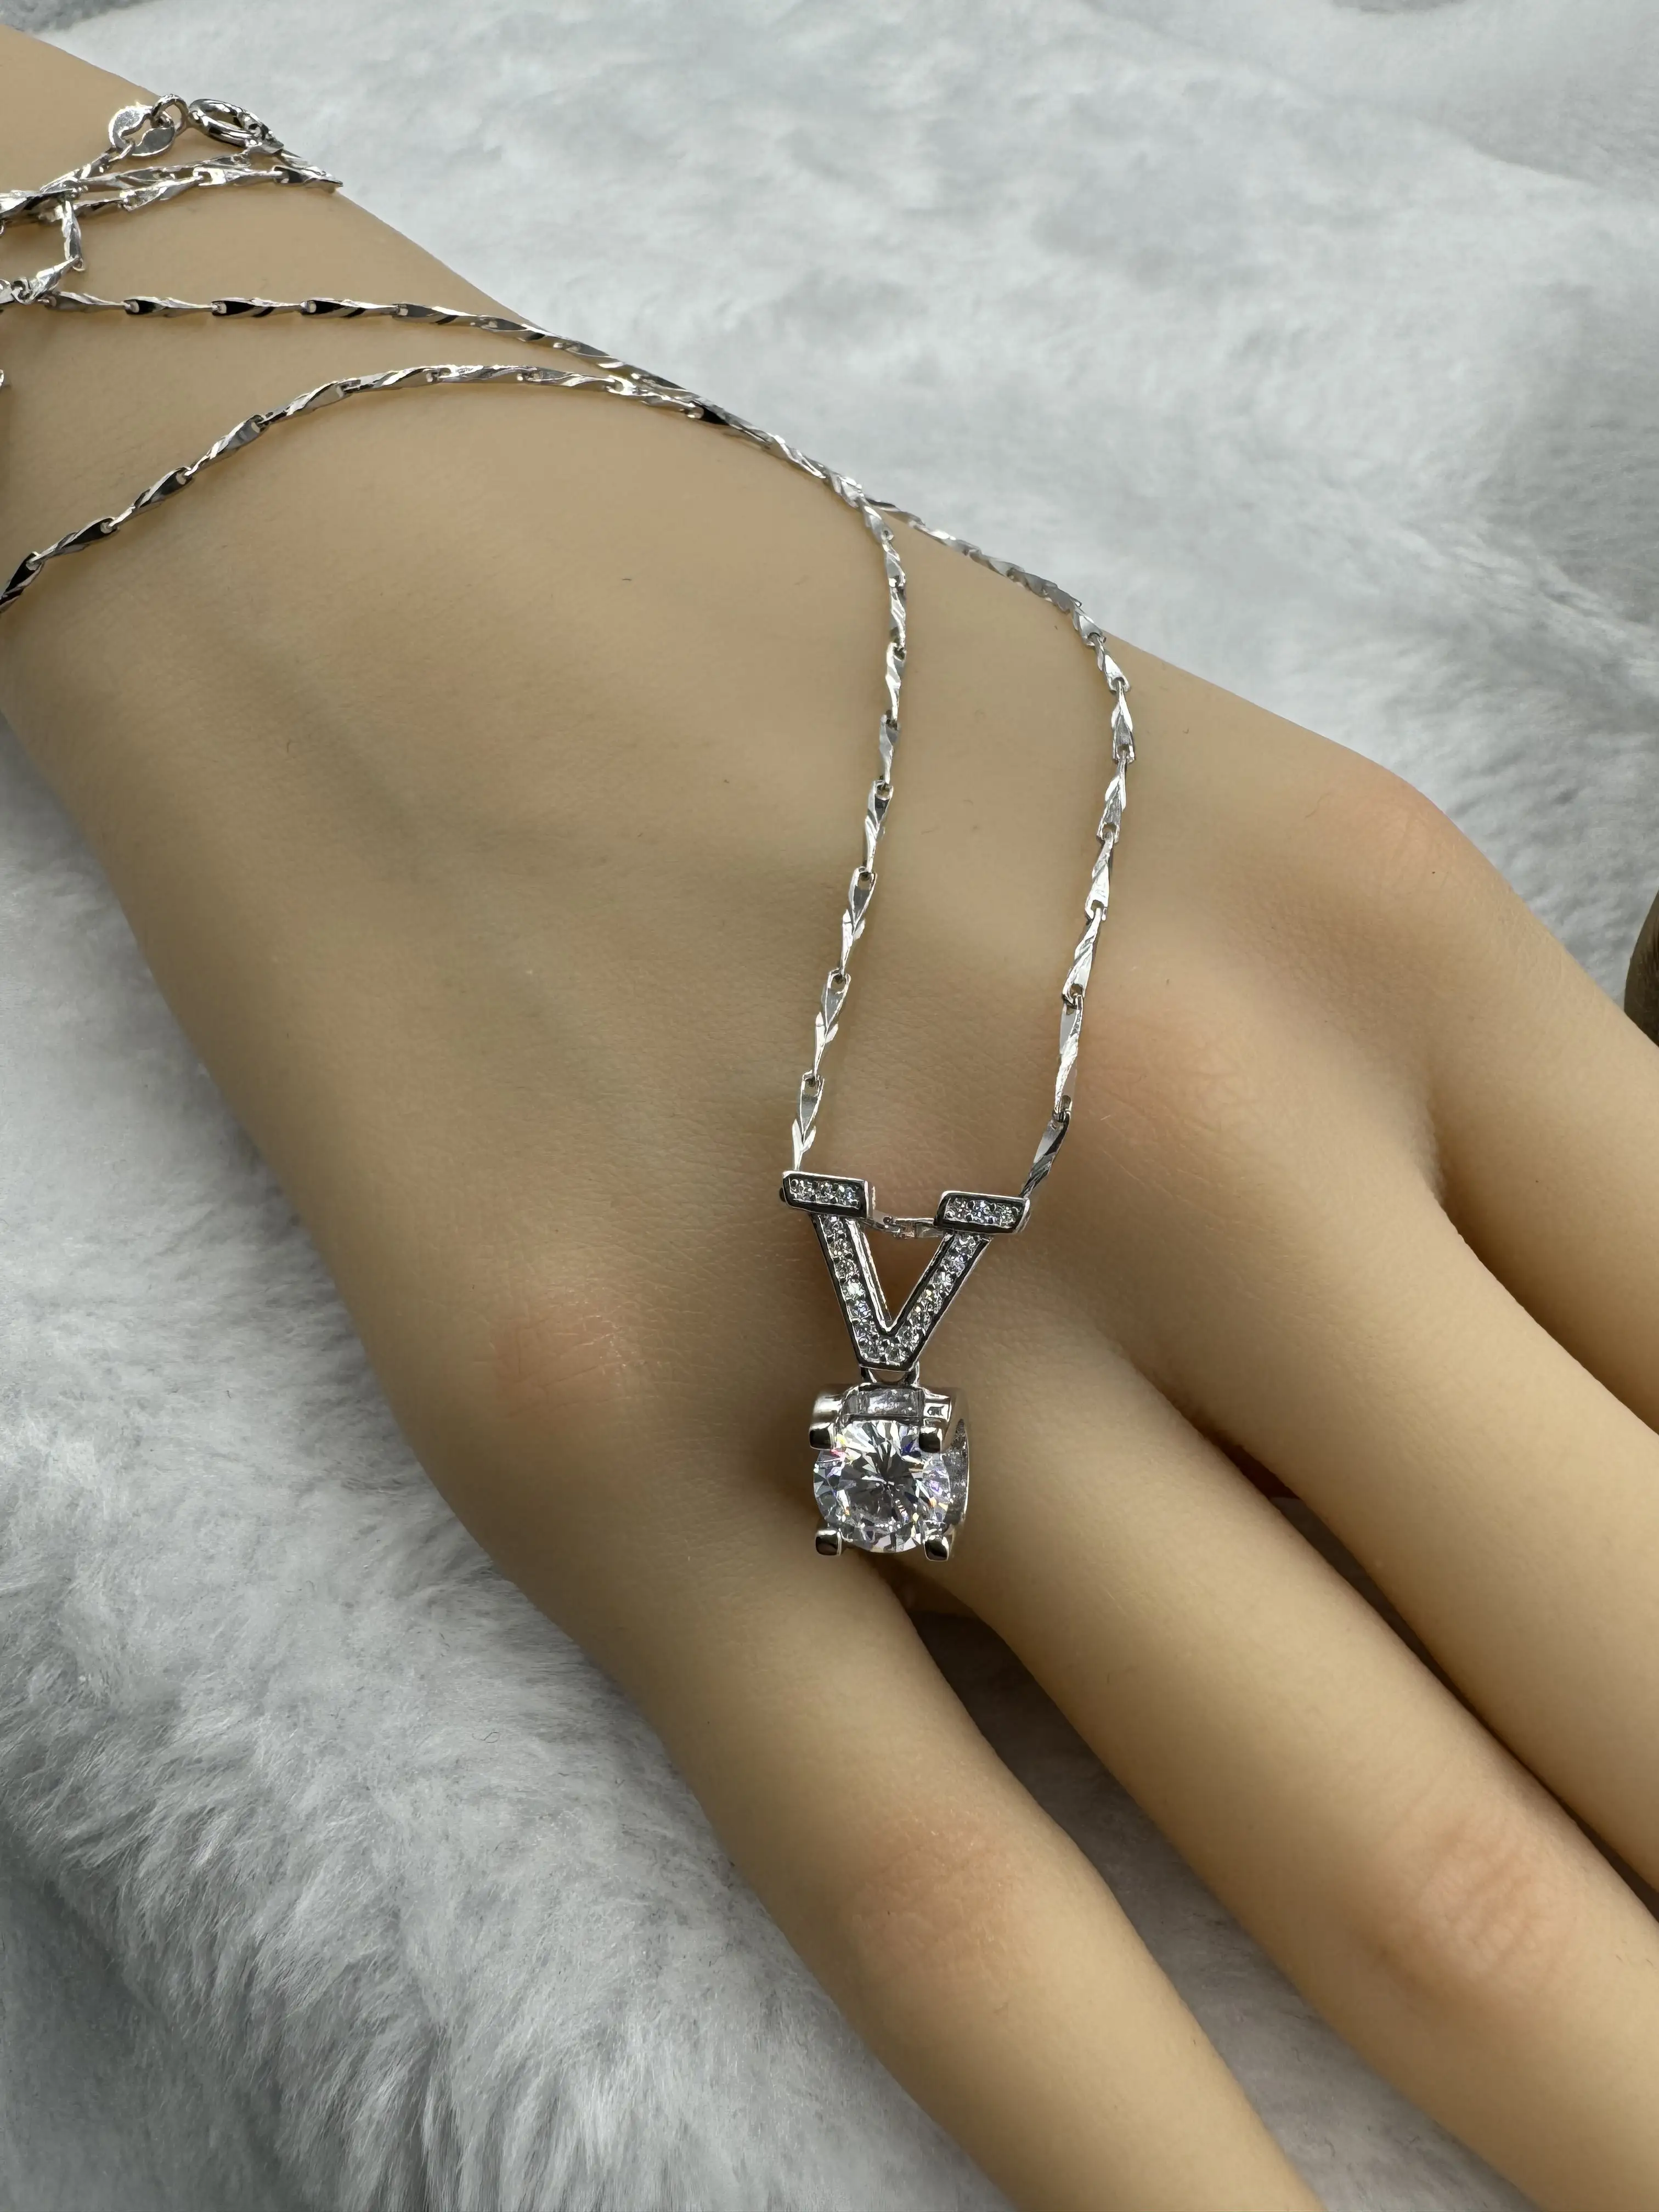 ジュエリー925スターリングシルバーレディースネックレスジルコンモアッサナイトダイヤモンド養殖ダイヤモンド絶妙な宝石ギフト